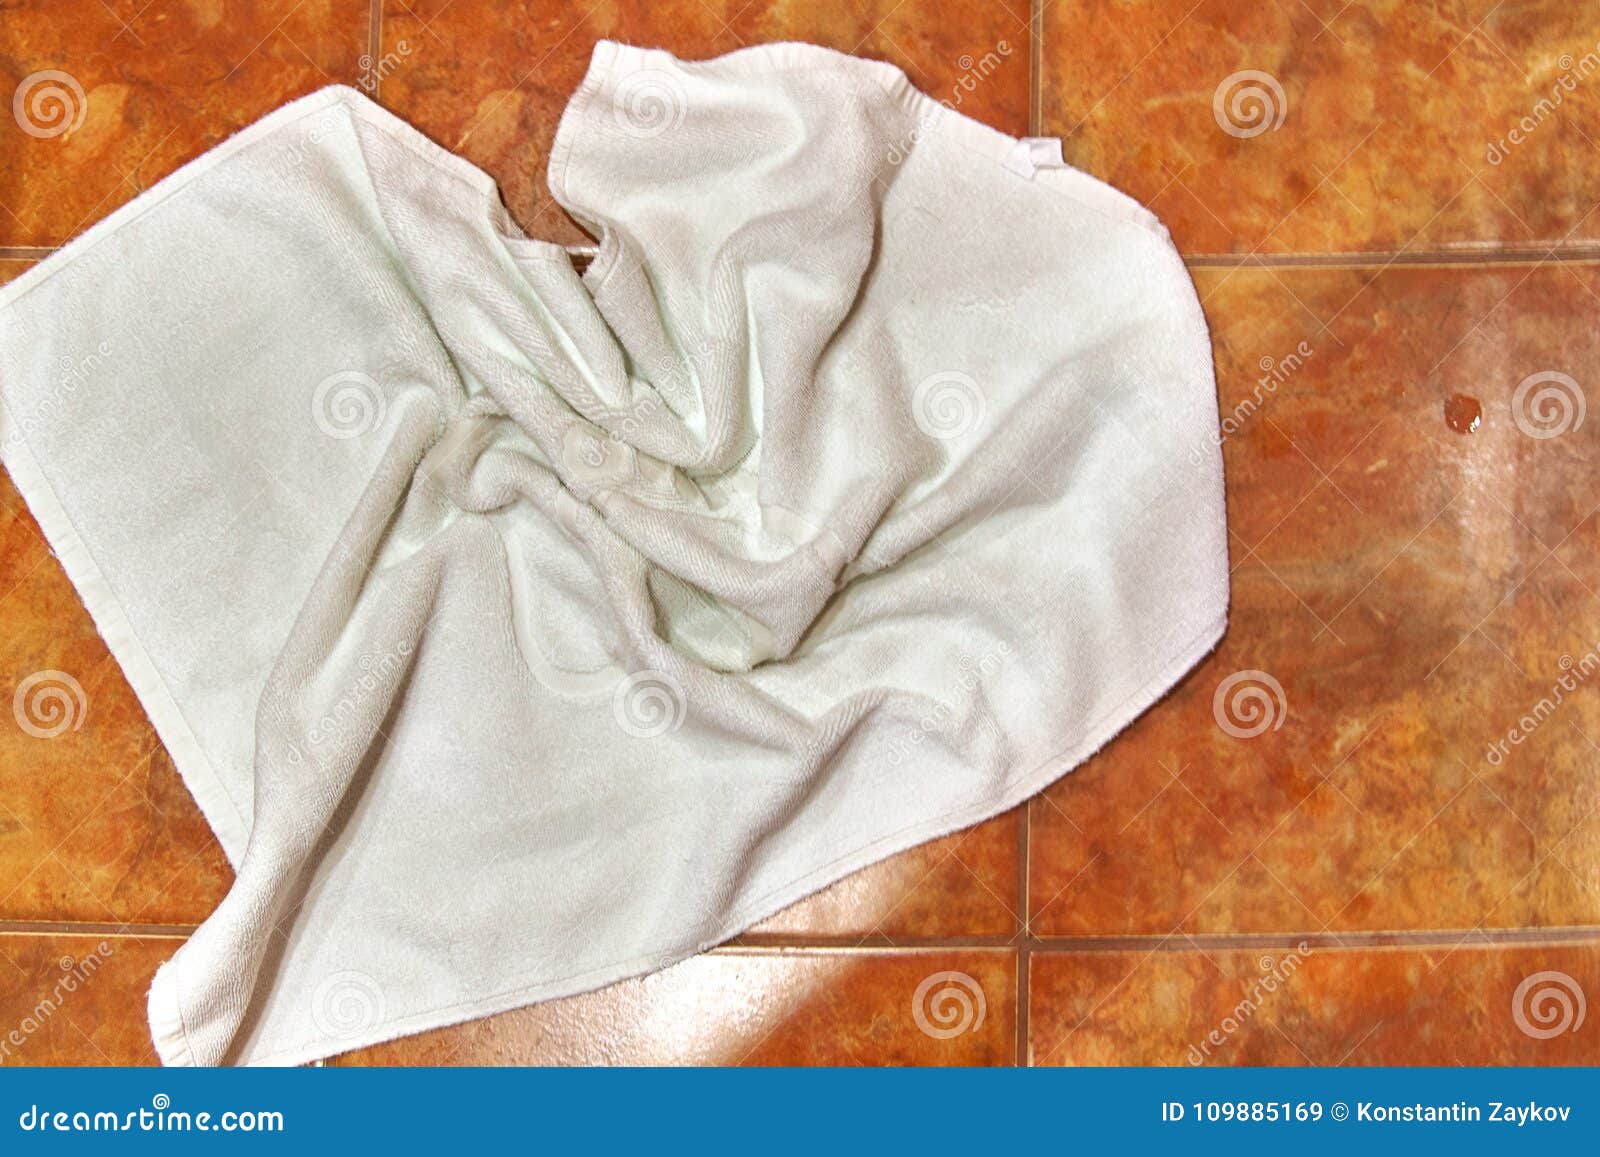 Брошенное полотенце. Белое полотенце на полу. Полотенце в ванной на полу белое. Полотенце валяется на полу. Полотенце лежит.